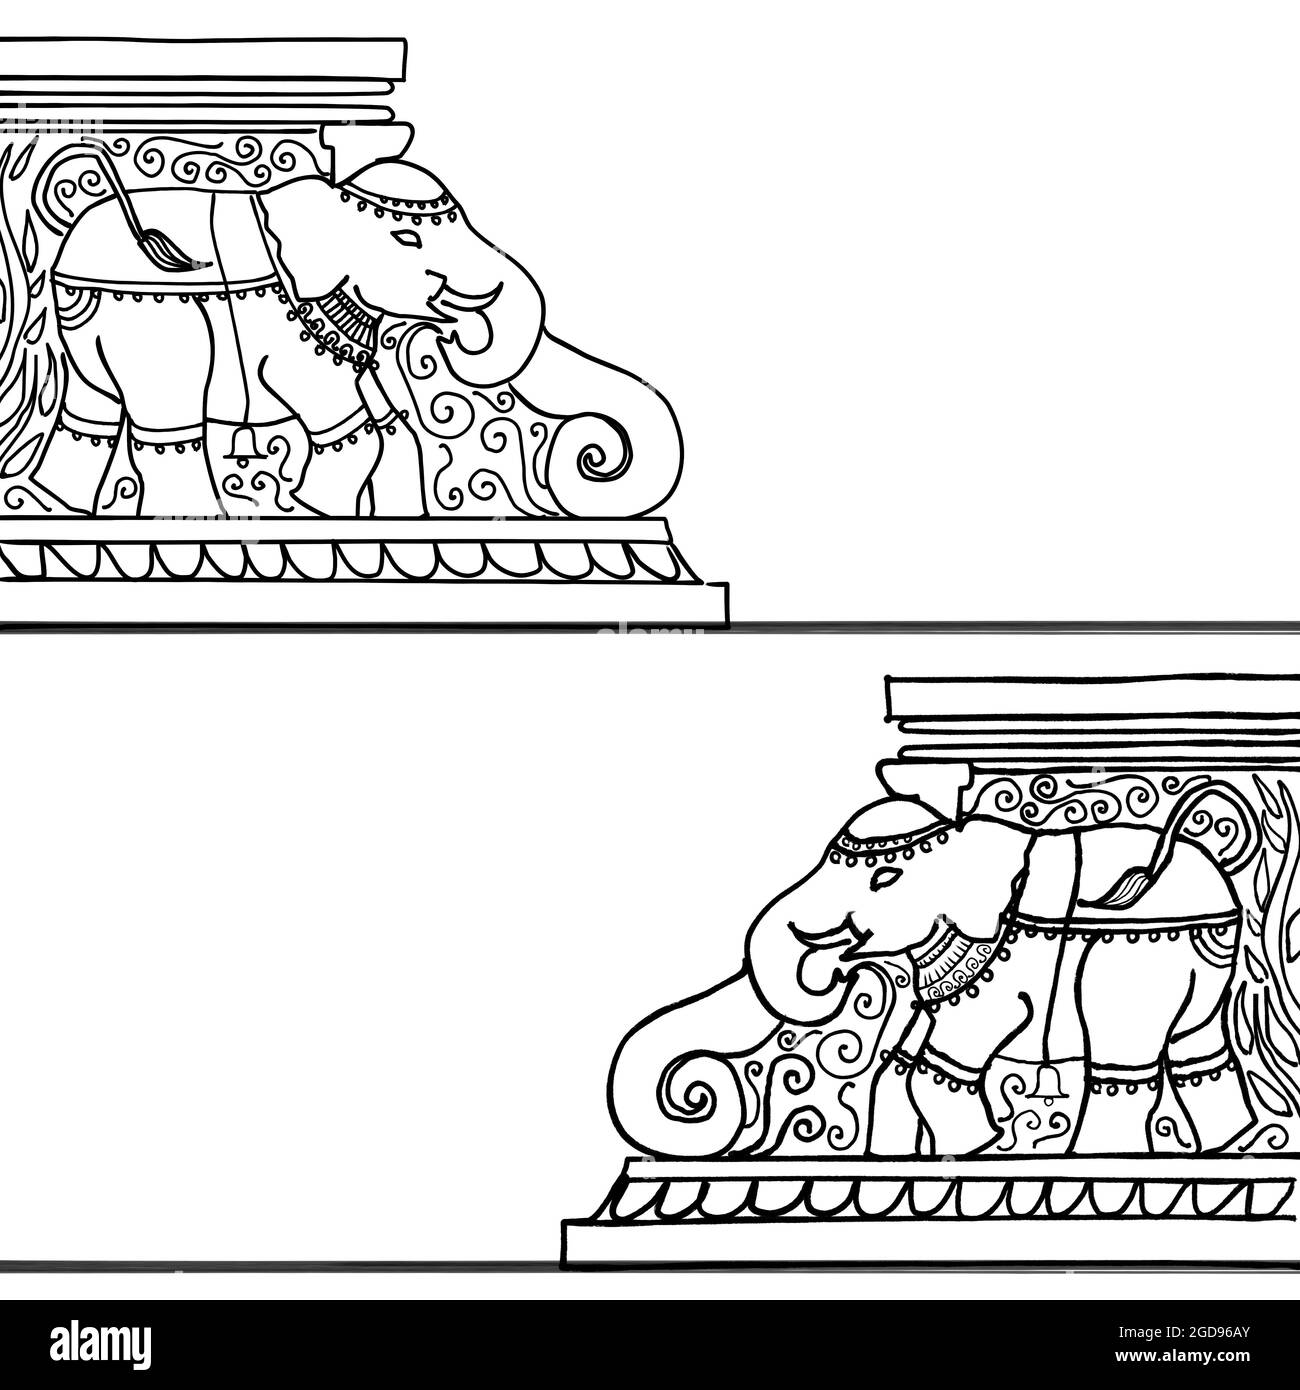 Indische Tempelästhetik: Skizze einer verzierten indischen Tempeltreppe mit einem Elefanten. Wird als Rahmen oder Dekoration verwendet. Stockfoto